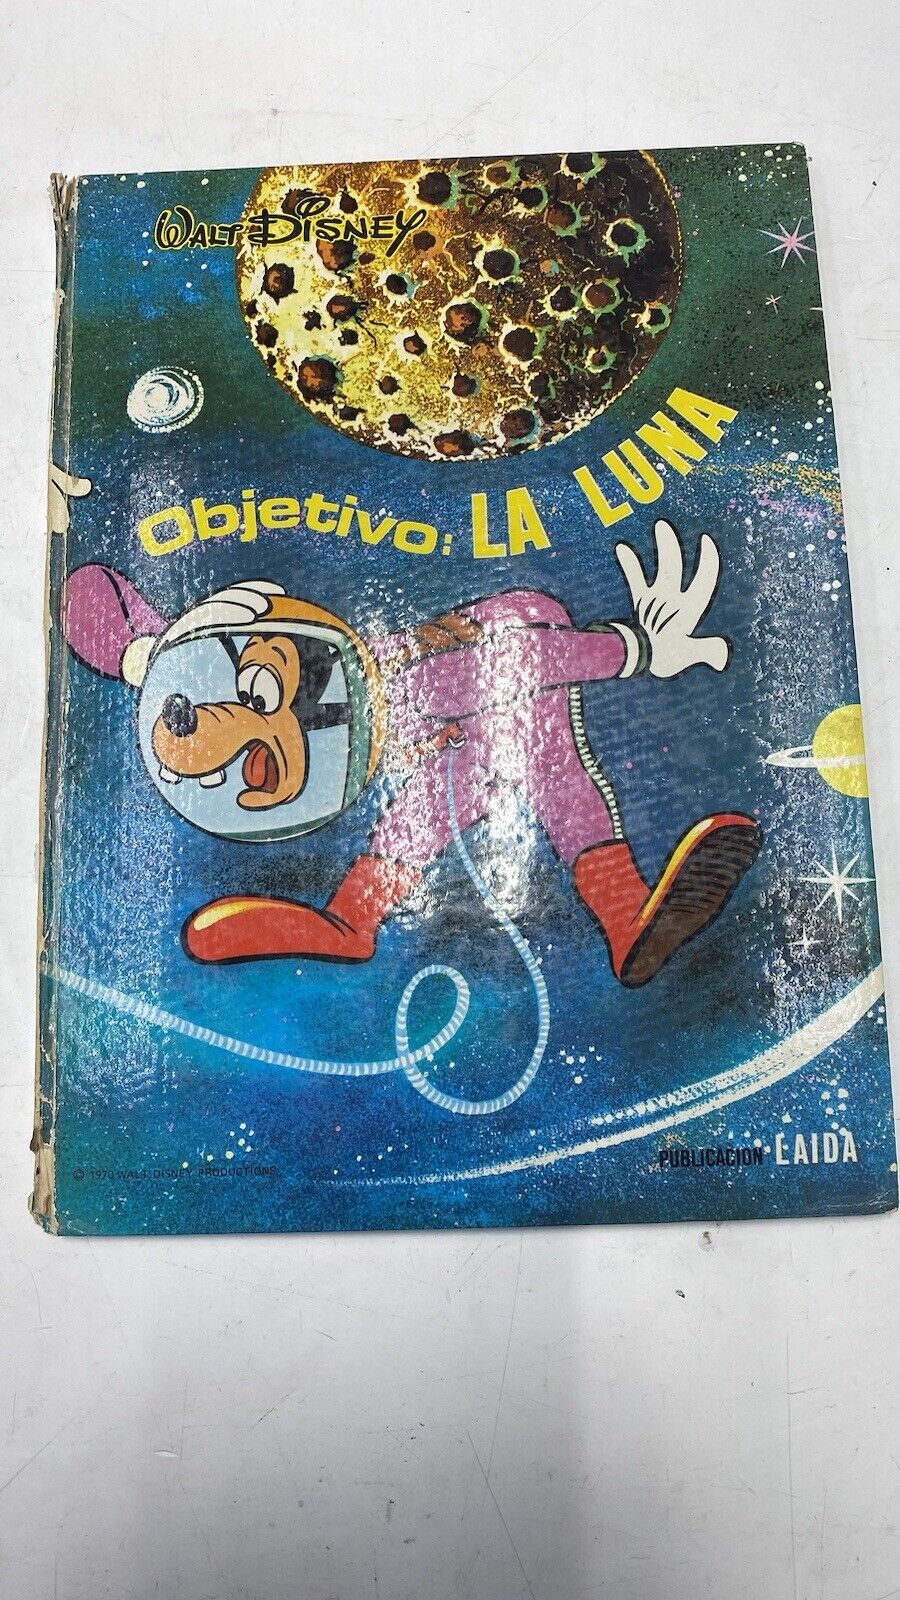 🔆 1970 Libro WALT DISNEY Objetivo: LA LUNA *EDICIONES LAIDA* (PRINTED IN SPAIN)